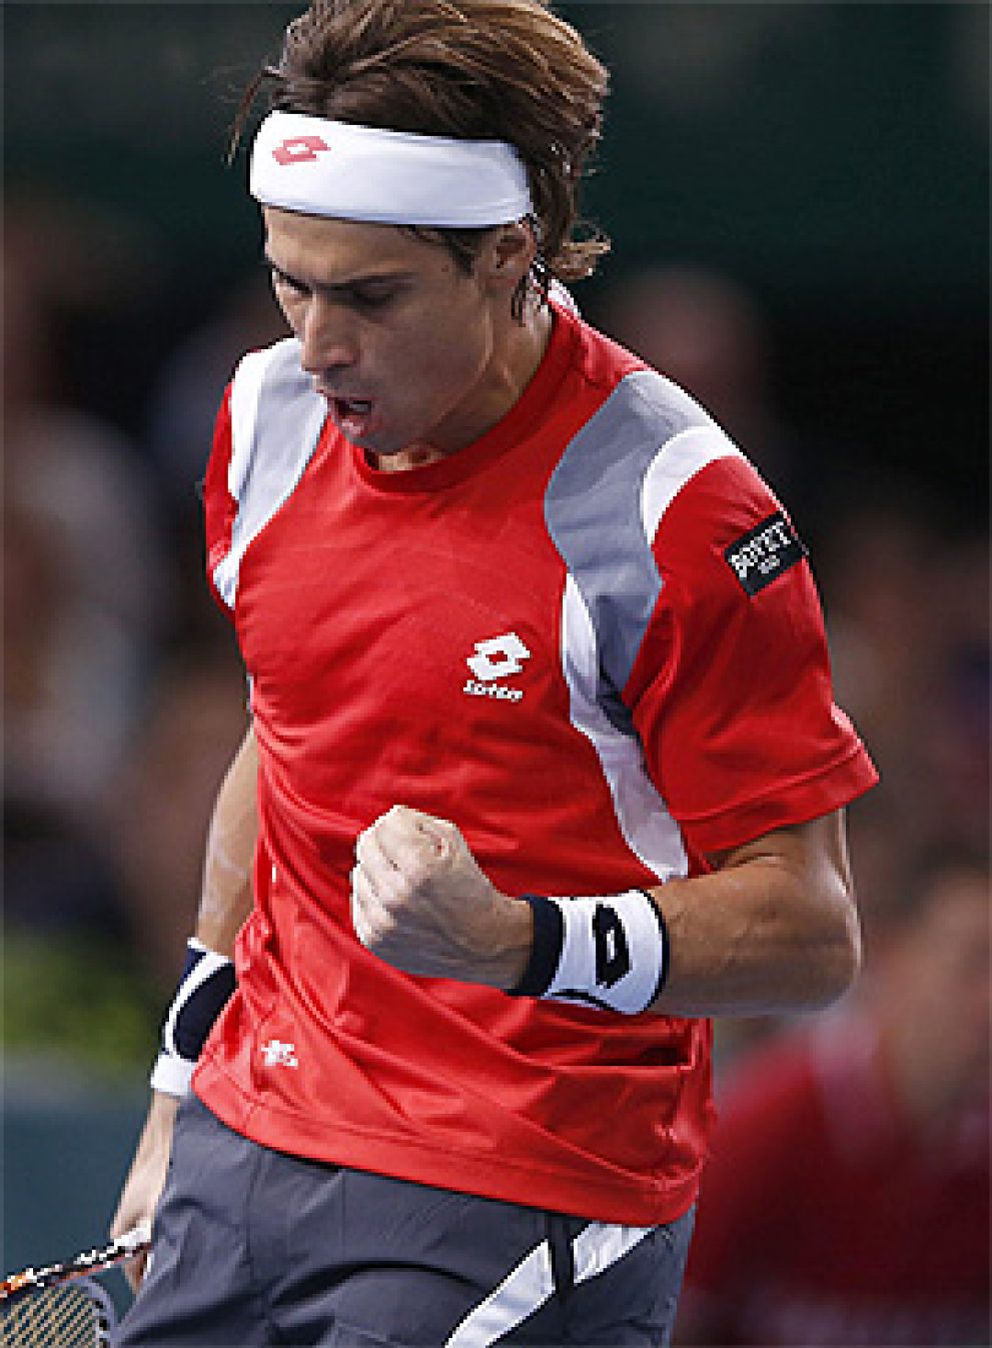 Foto: David Ferrer, mejor tenista español 2012 según la prensa especializada